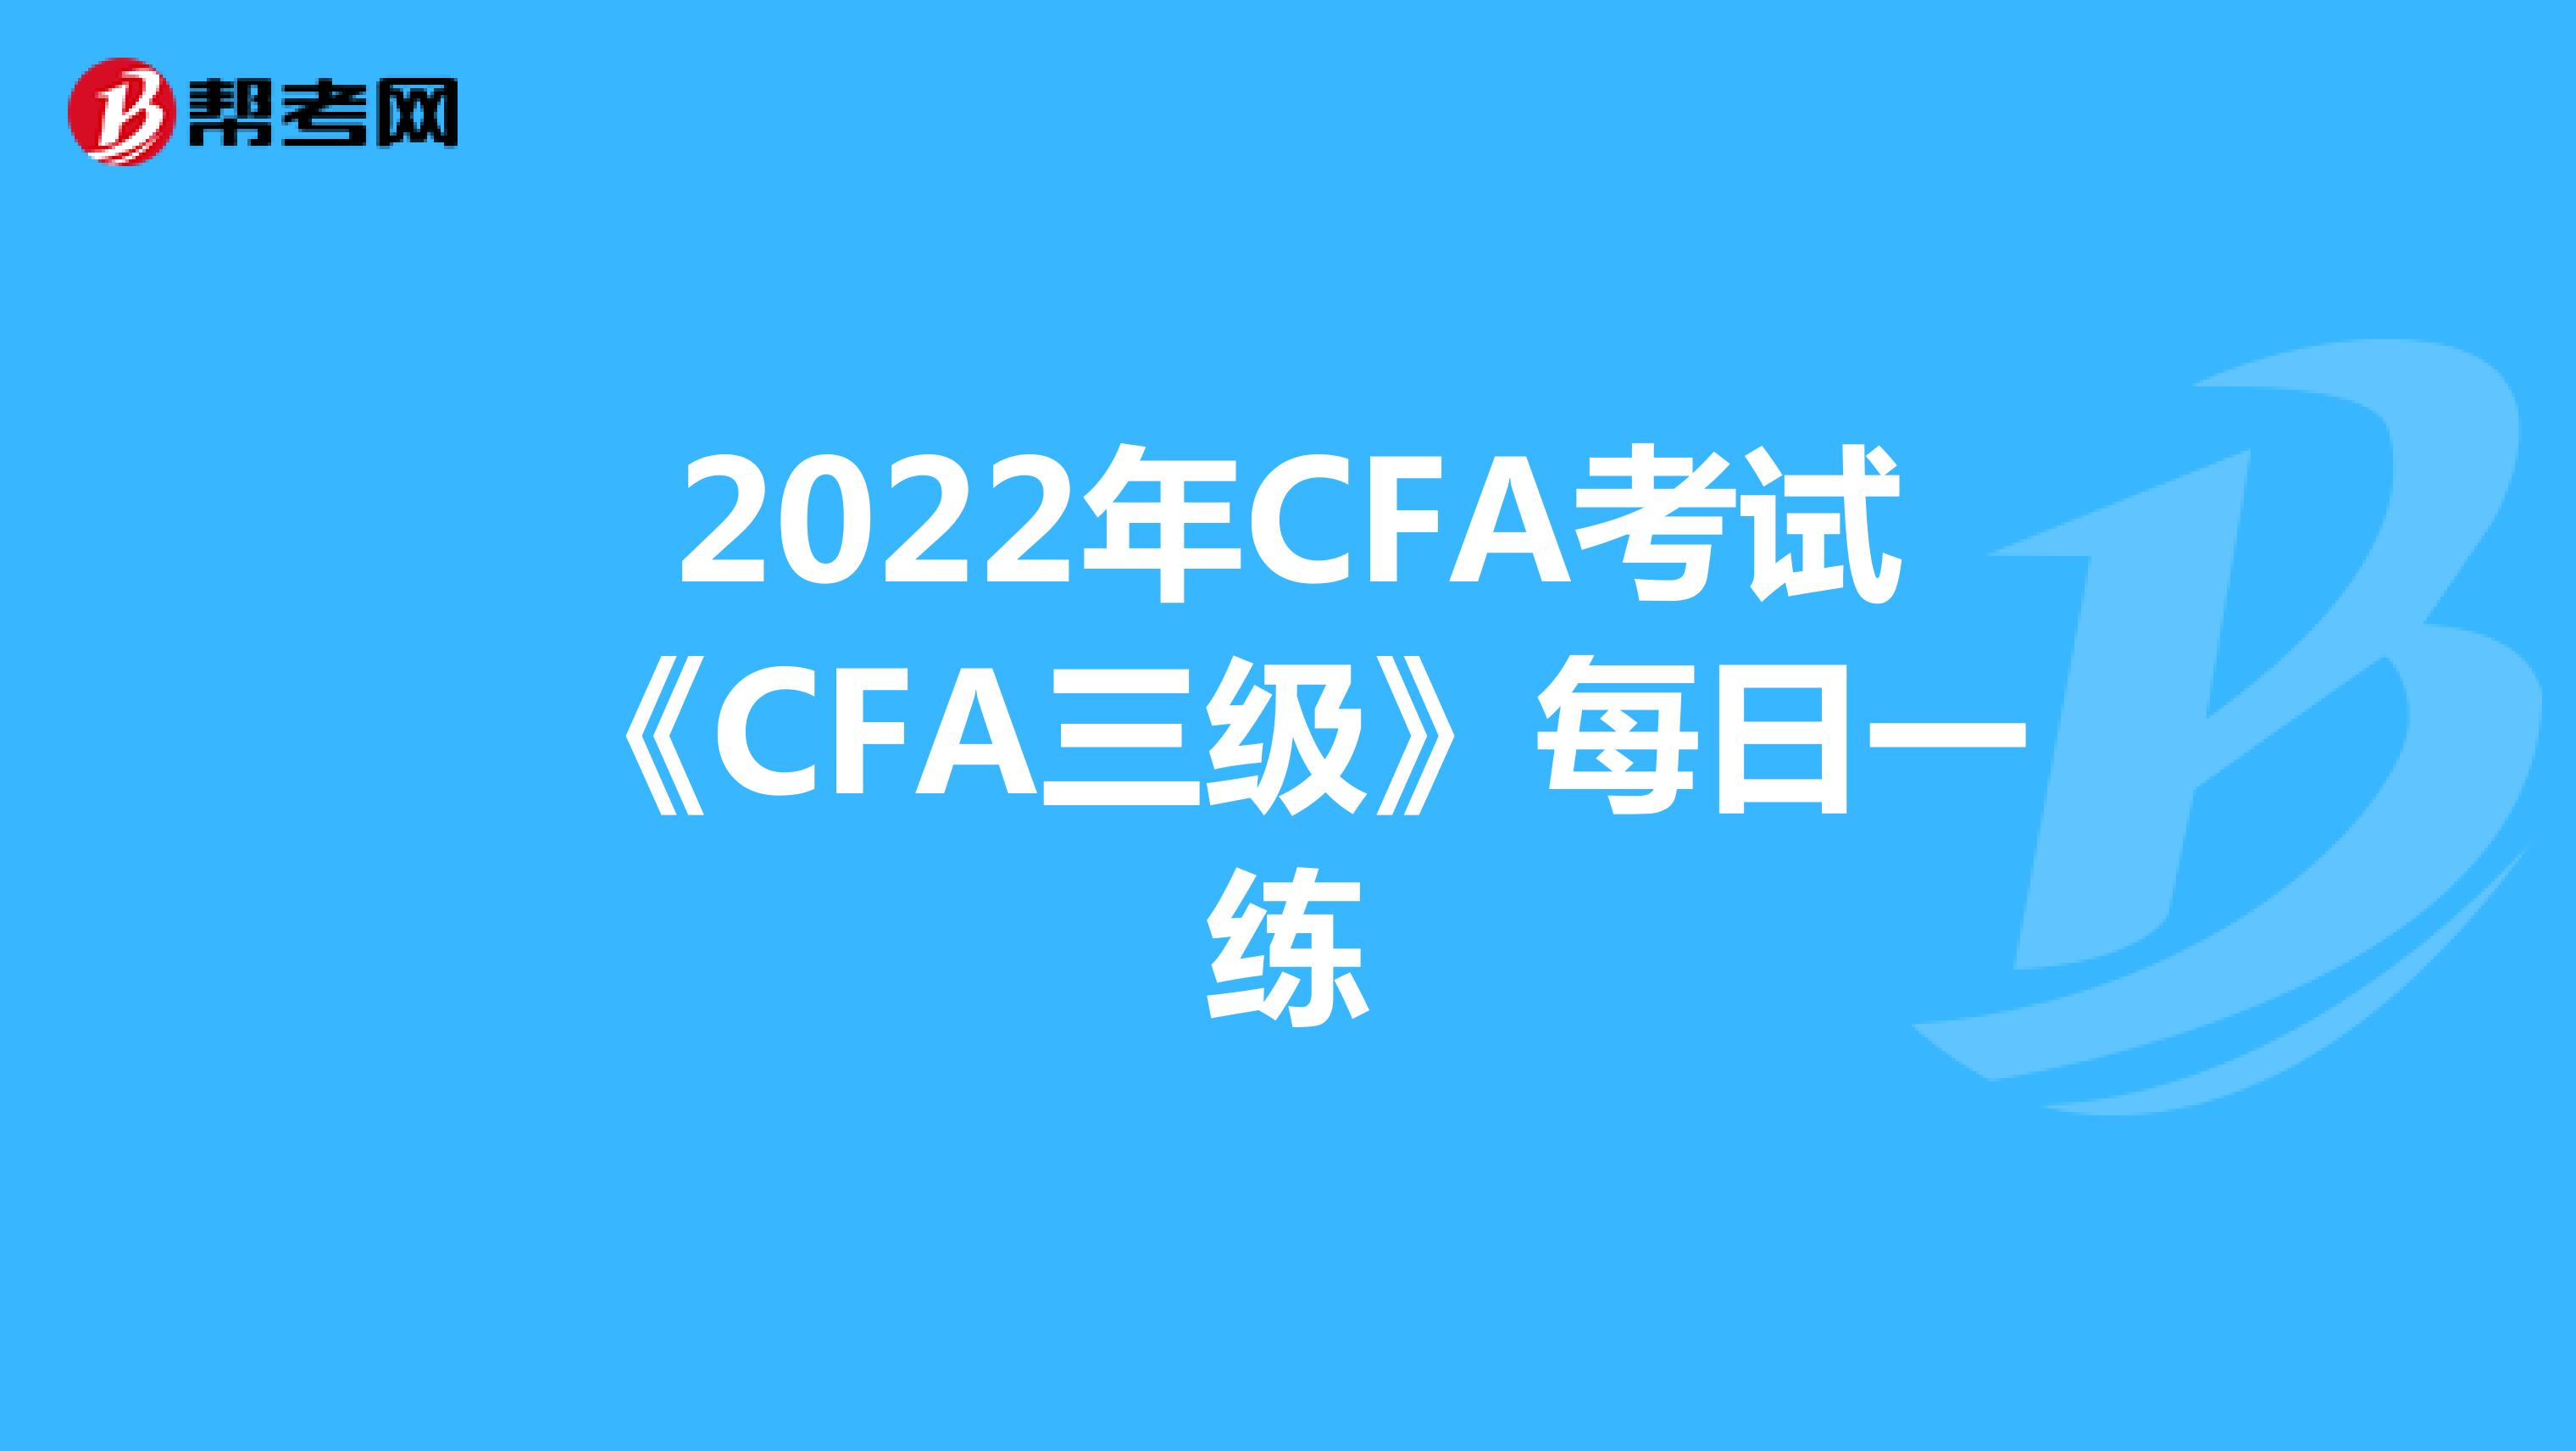 2022年CFA考试《CFA三级》每日一练